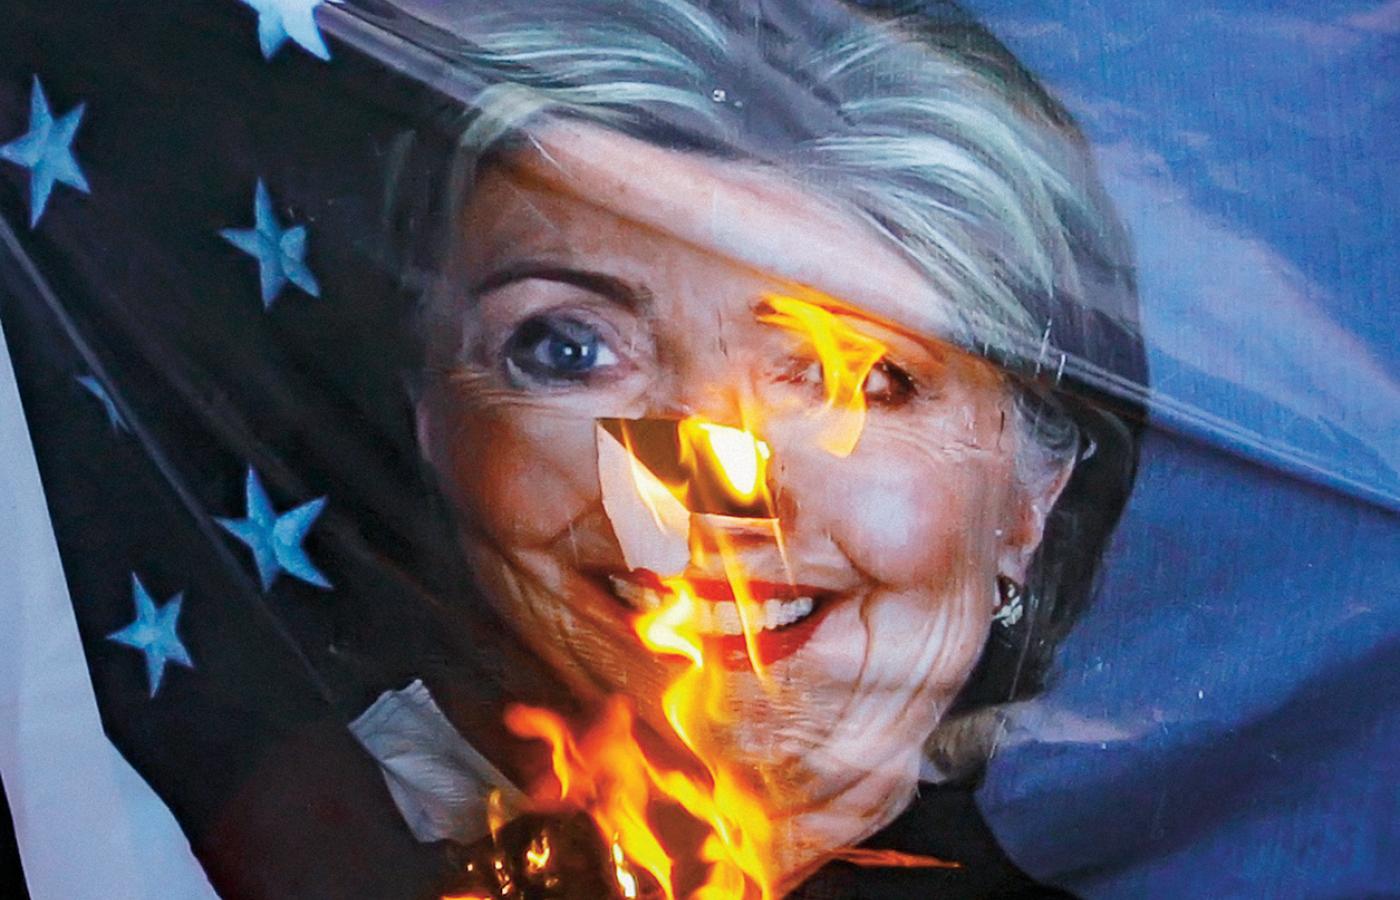 Każda wizyta amerykańskiego dyplomaty jest w Pakistanie okazją do protestów – w październiku spalono wielki portret goszczonej przez władze Hillary Clinton.